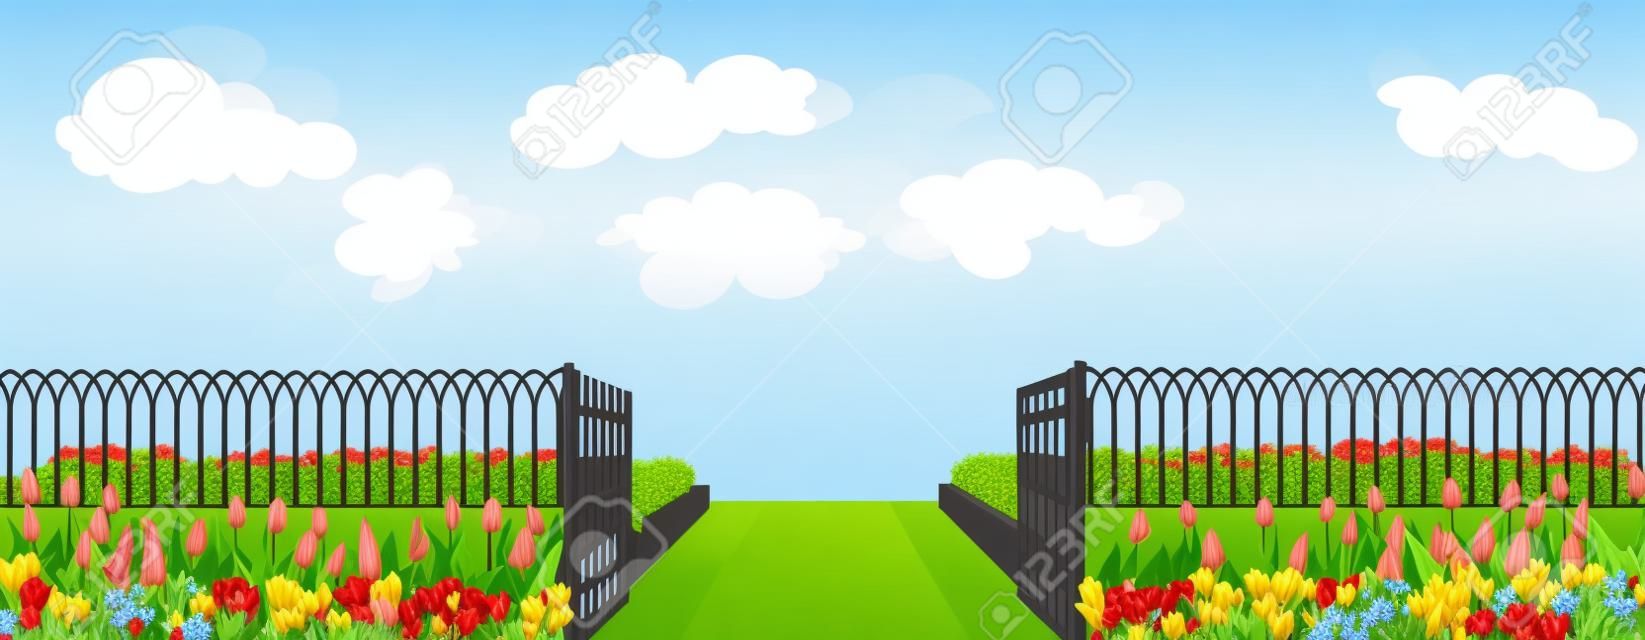 Eingangszaun mit einem Tor, einem Blumenbeet und Blumentulpen im Cartoon-Stil, Vektorillustration